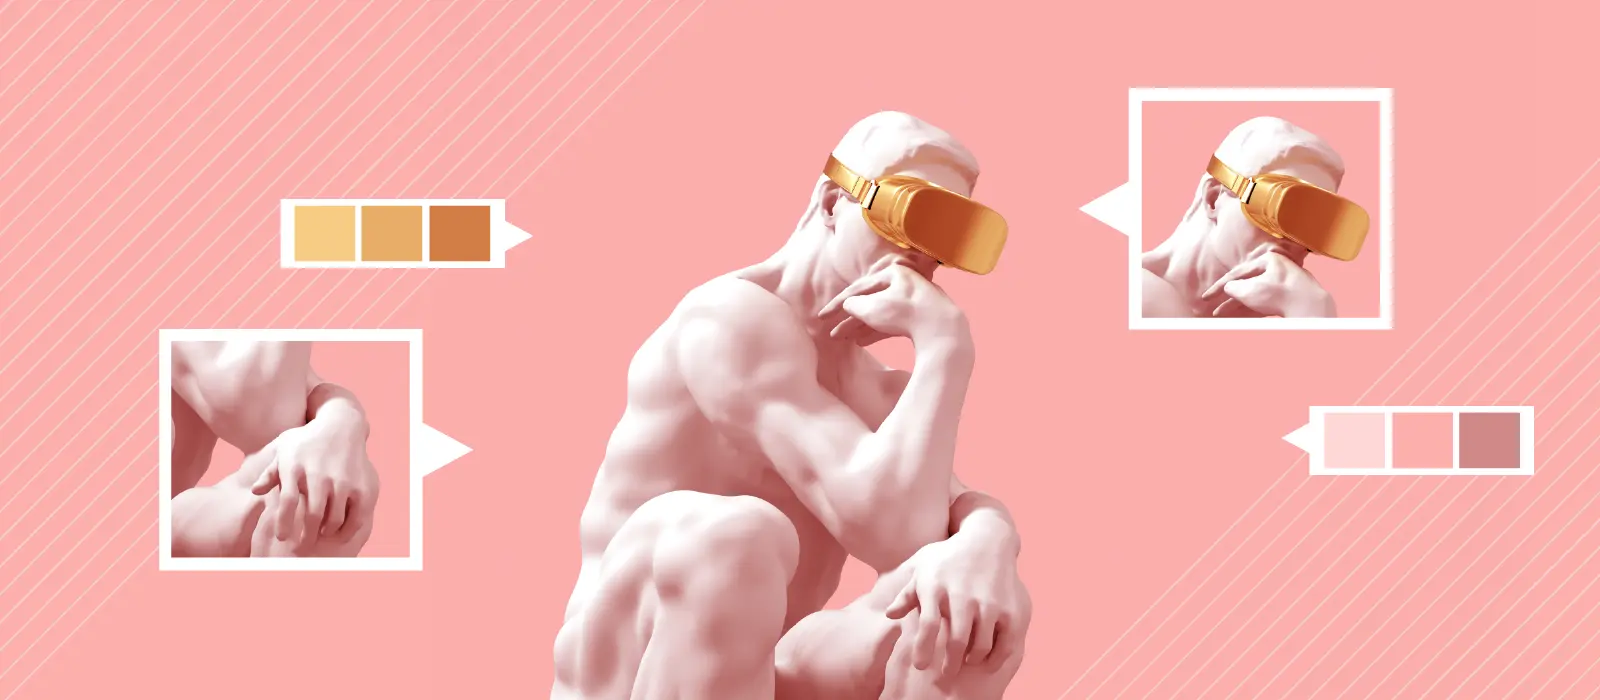 Imagem da escultura do pensador com um visor de realidade virtual dourado em um fundo rosa